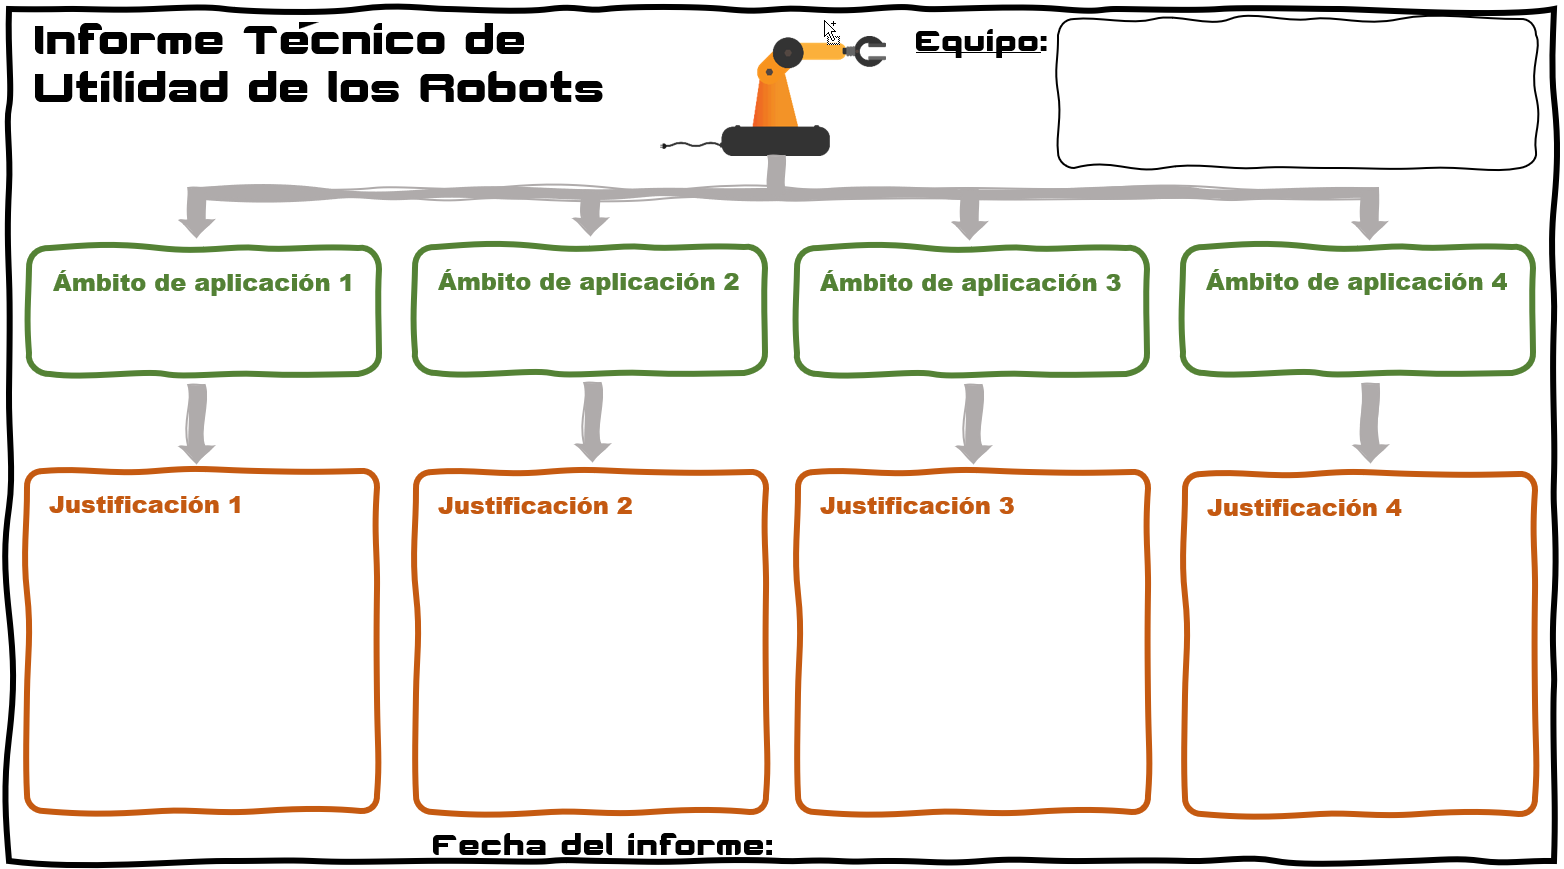 Imagen donde se muestra un documento que contiene cuatro columnas. En cada una se deberá indicar los diferentes ámbitos de aplicación de los robots y su justificación.